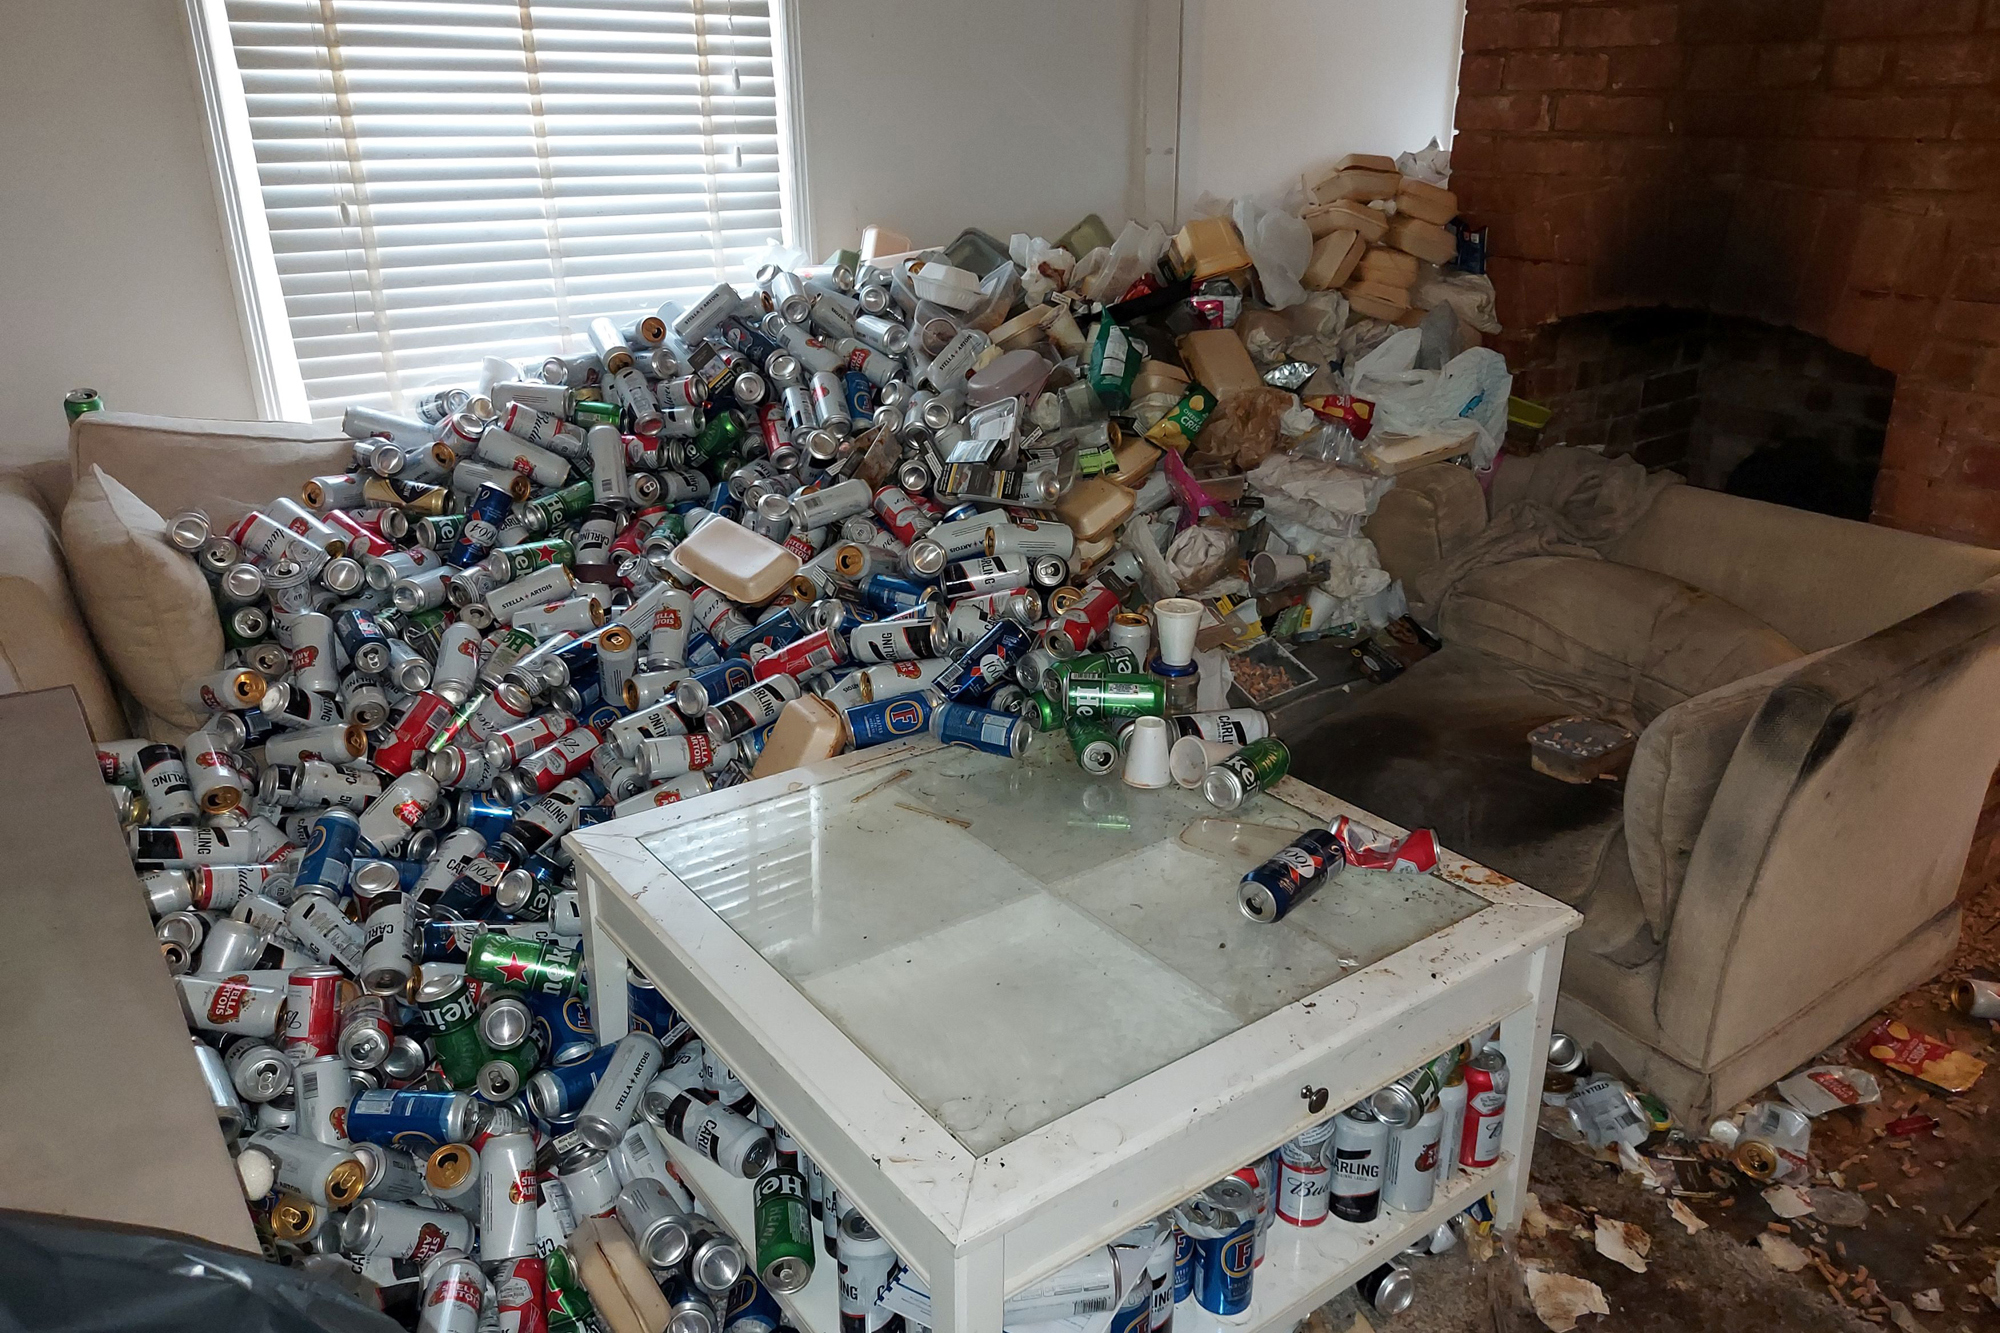 r trashy living room